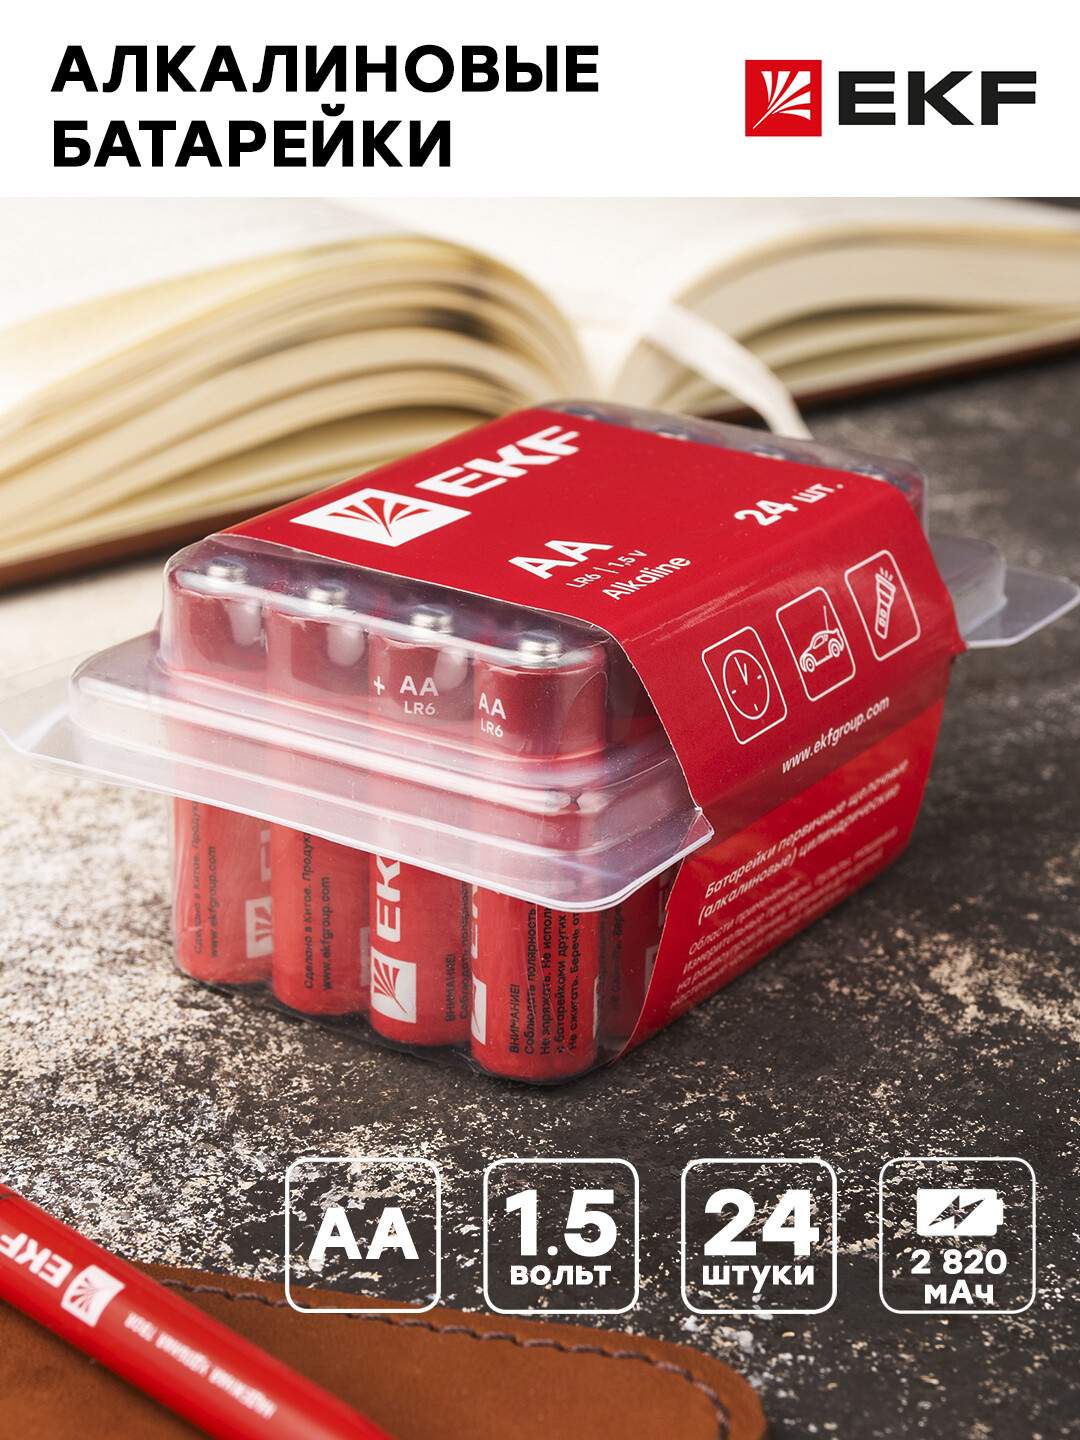 Алкалиновая батарейка АА(LR6) пластиковый бокс 24шт. EKF - купить в EKF Официальный Магазин. (со склада МегаМаркет), цена на Мегамаркет